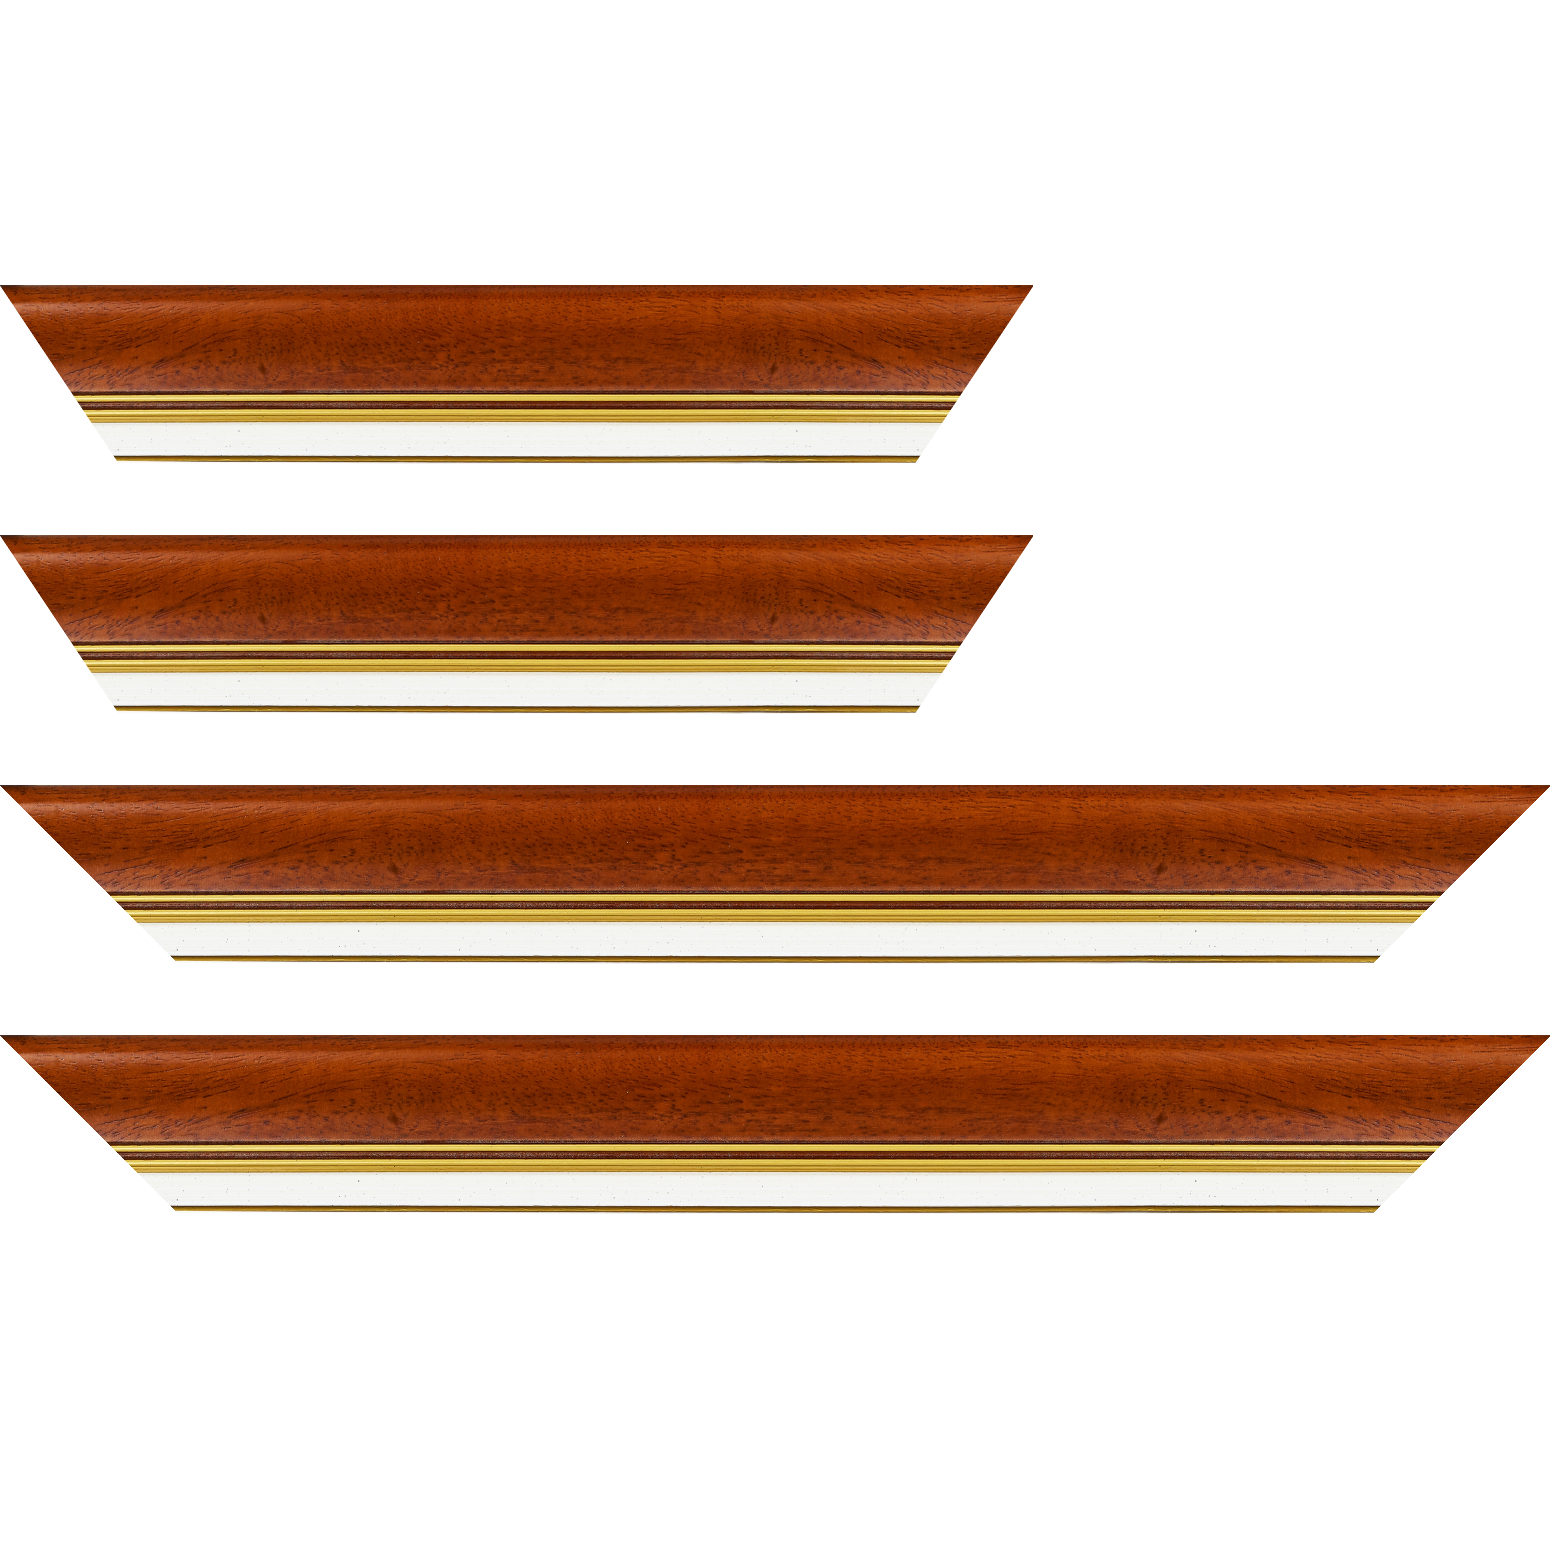 Baguette bois profil incurvé largeur 5.7cm de couleur marron ton bois marie louise blanche mouchetée filet or intégré - 30x90